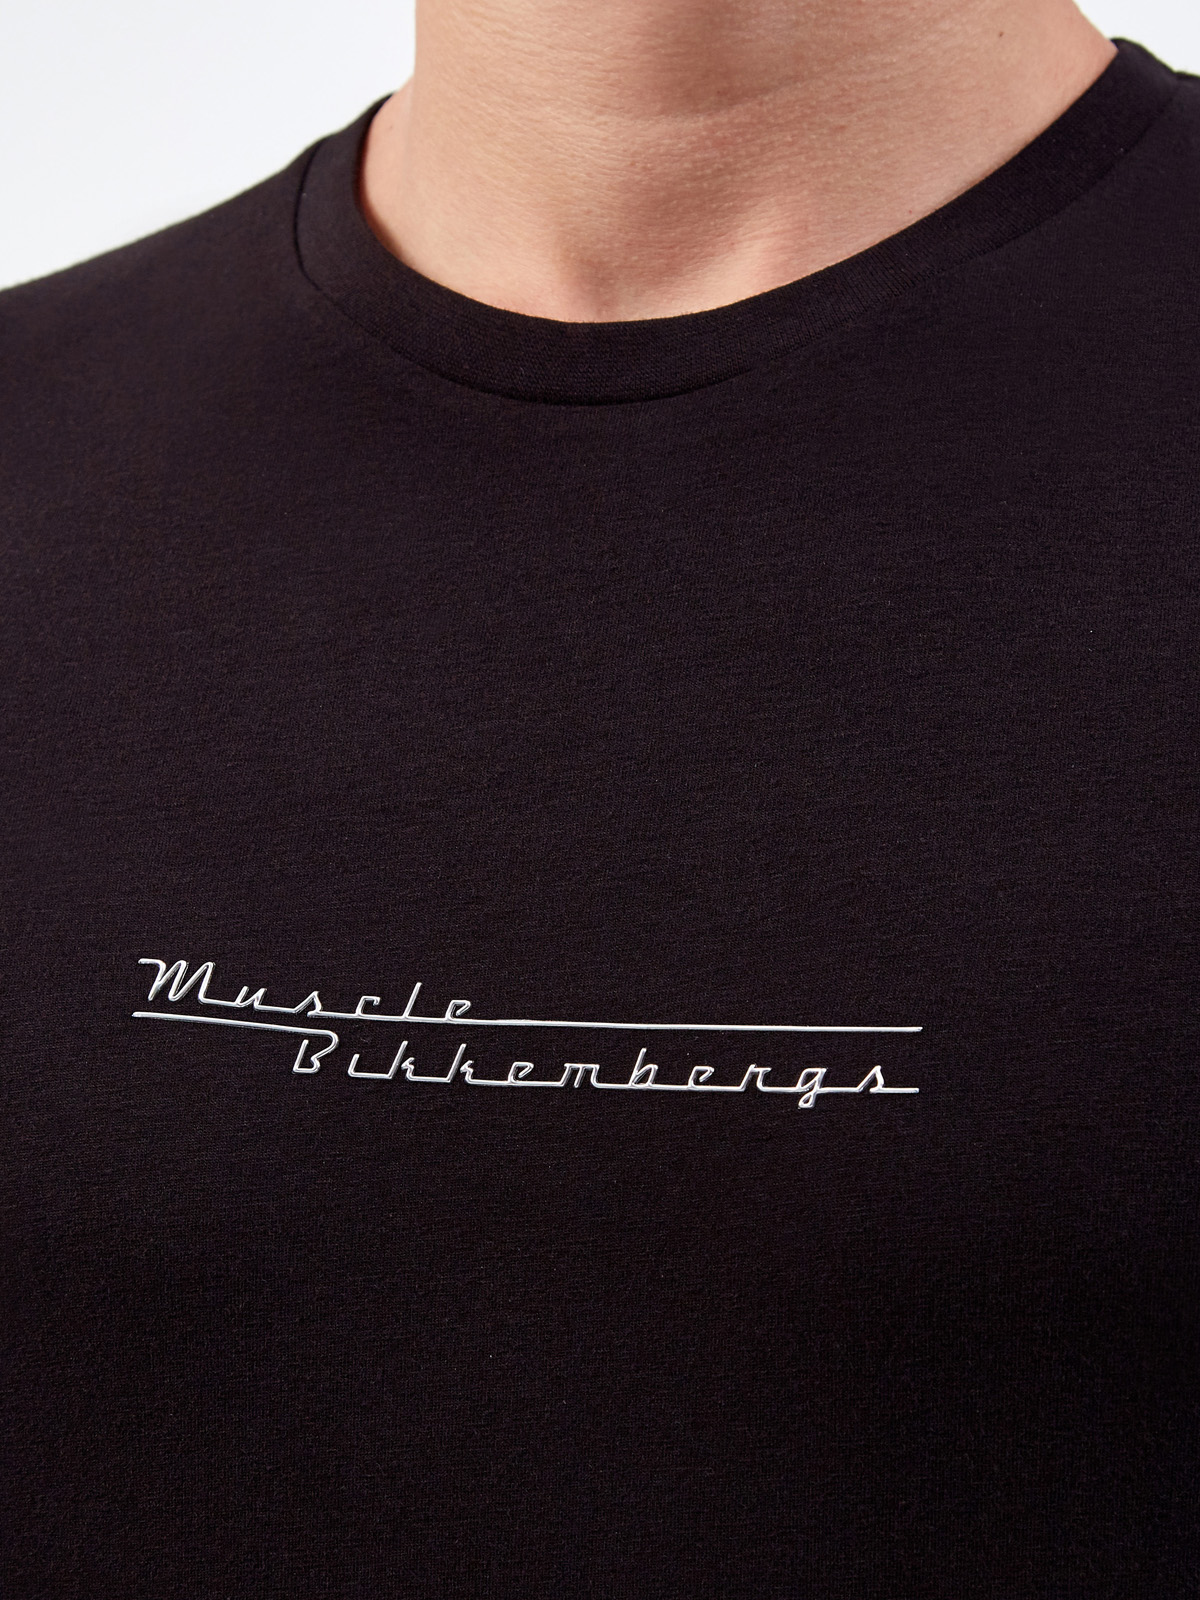 Хлопковая футболка с металлизированным логотипом и аппликацией BIKKEMBERGS, цвет черный, размер S;M;L;XL;2XL - фото 5